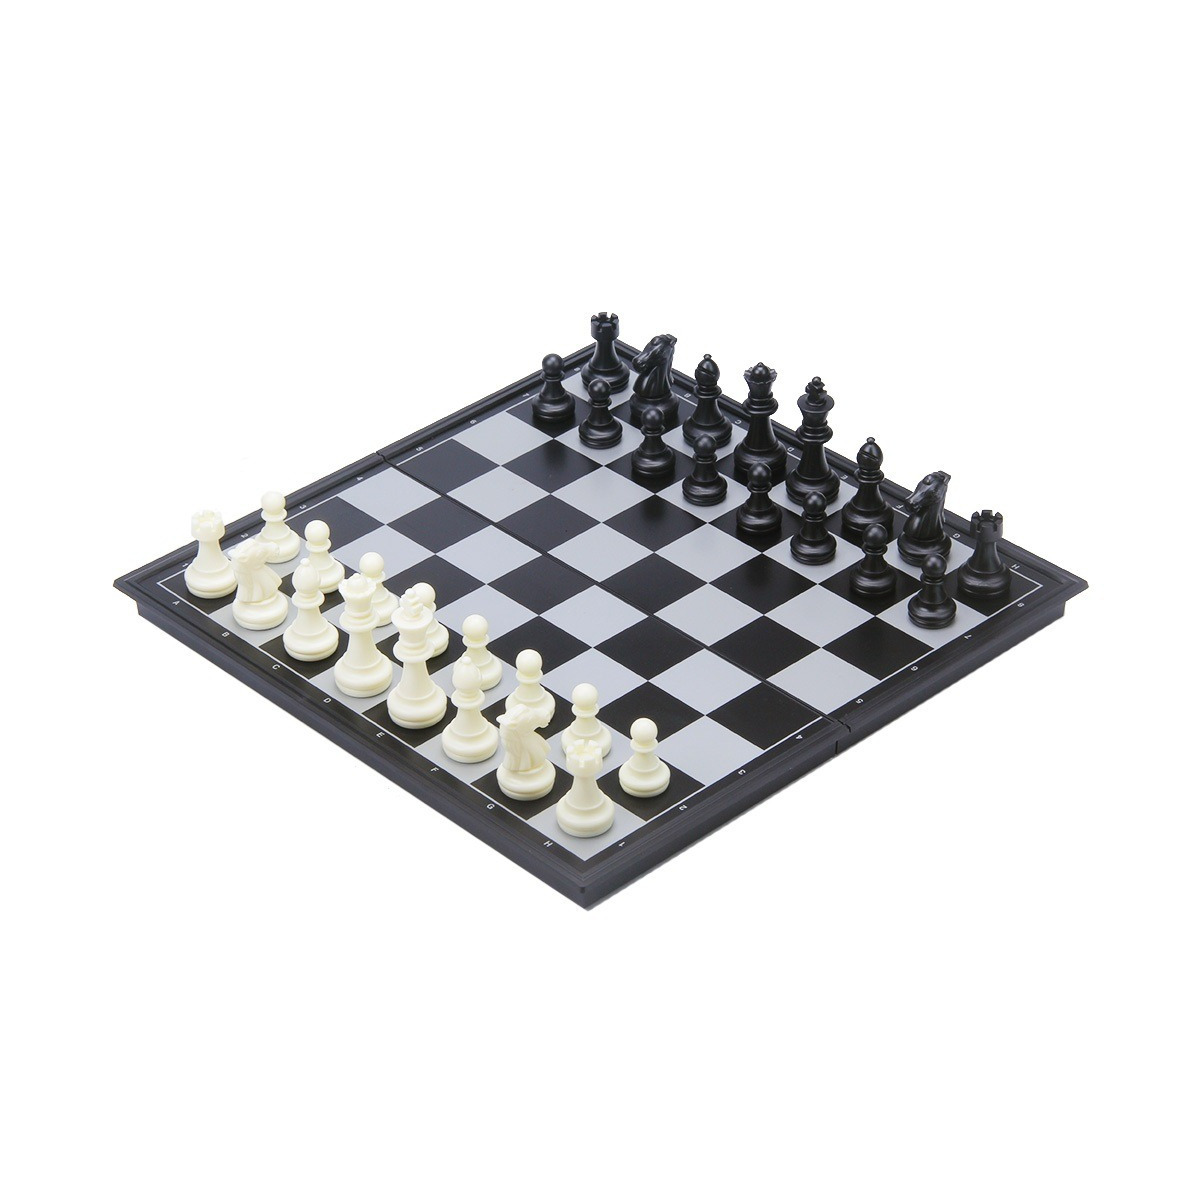 Afbeelding van Longfield games - Reis schaak/backgammon opklapbaar magnetisch bord 25 x 25 cm geleverd in een colou